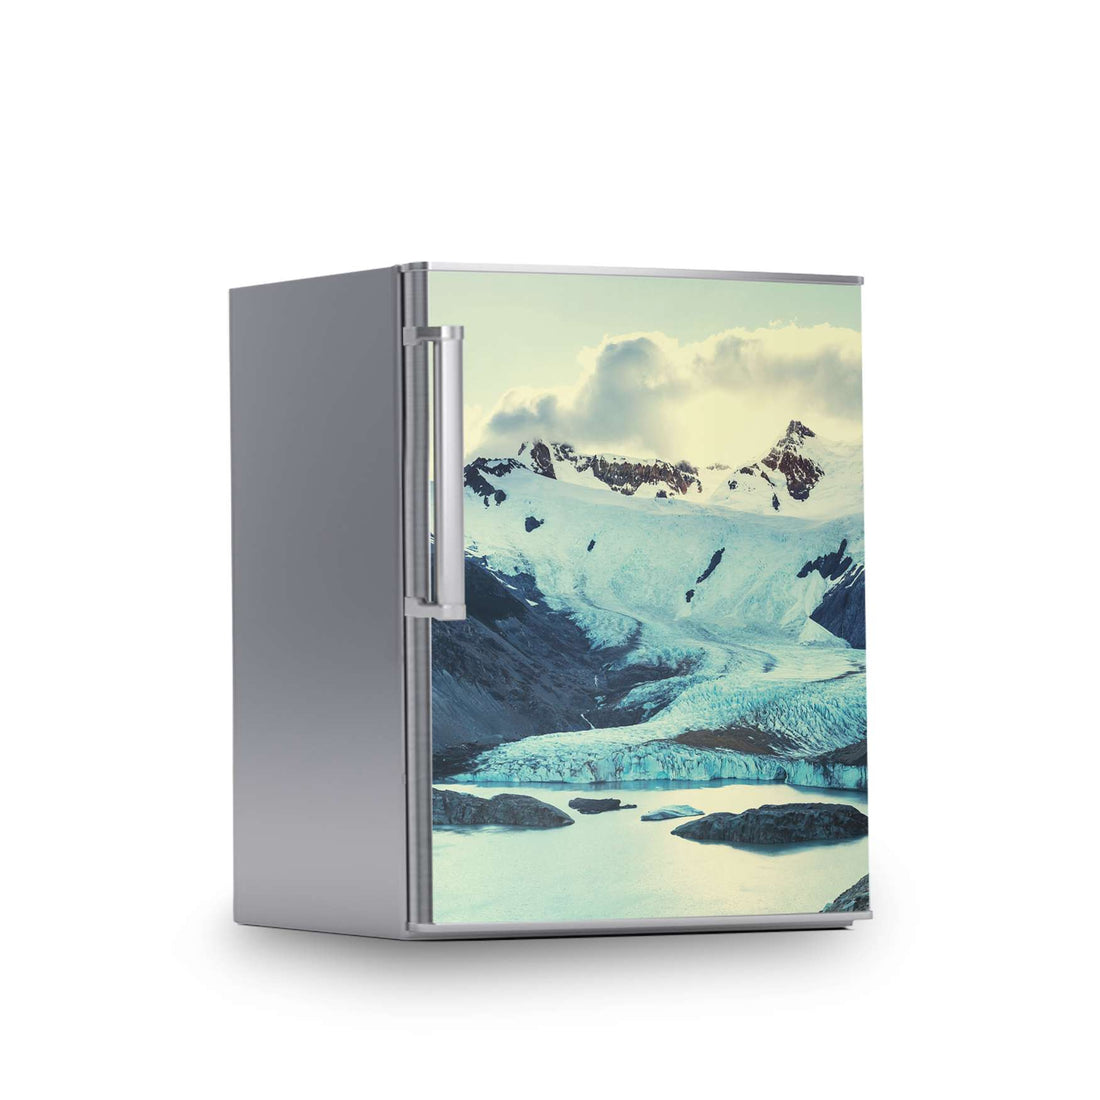 Kühlschrank Folie -Patagonia- Kühlschrank 60x80 cm